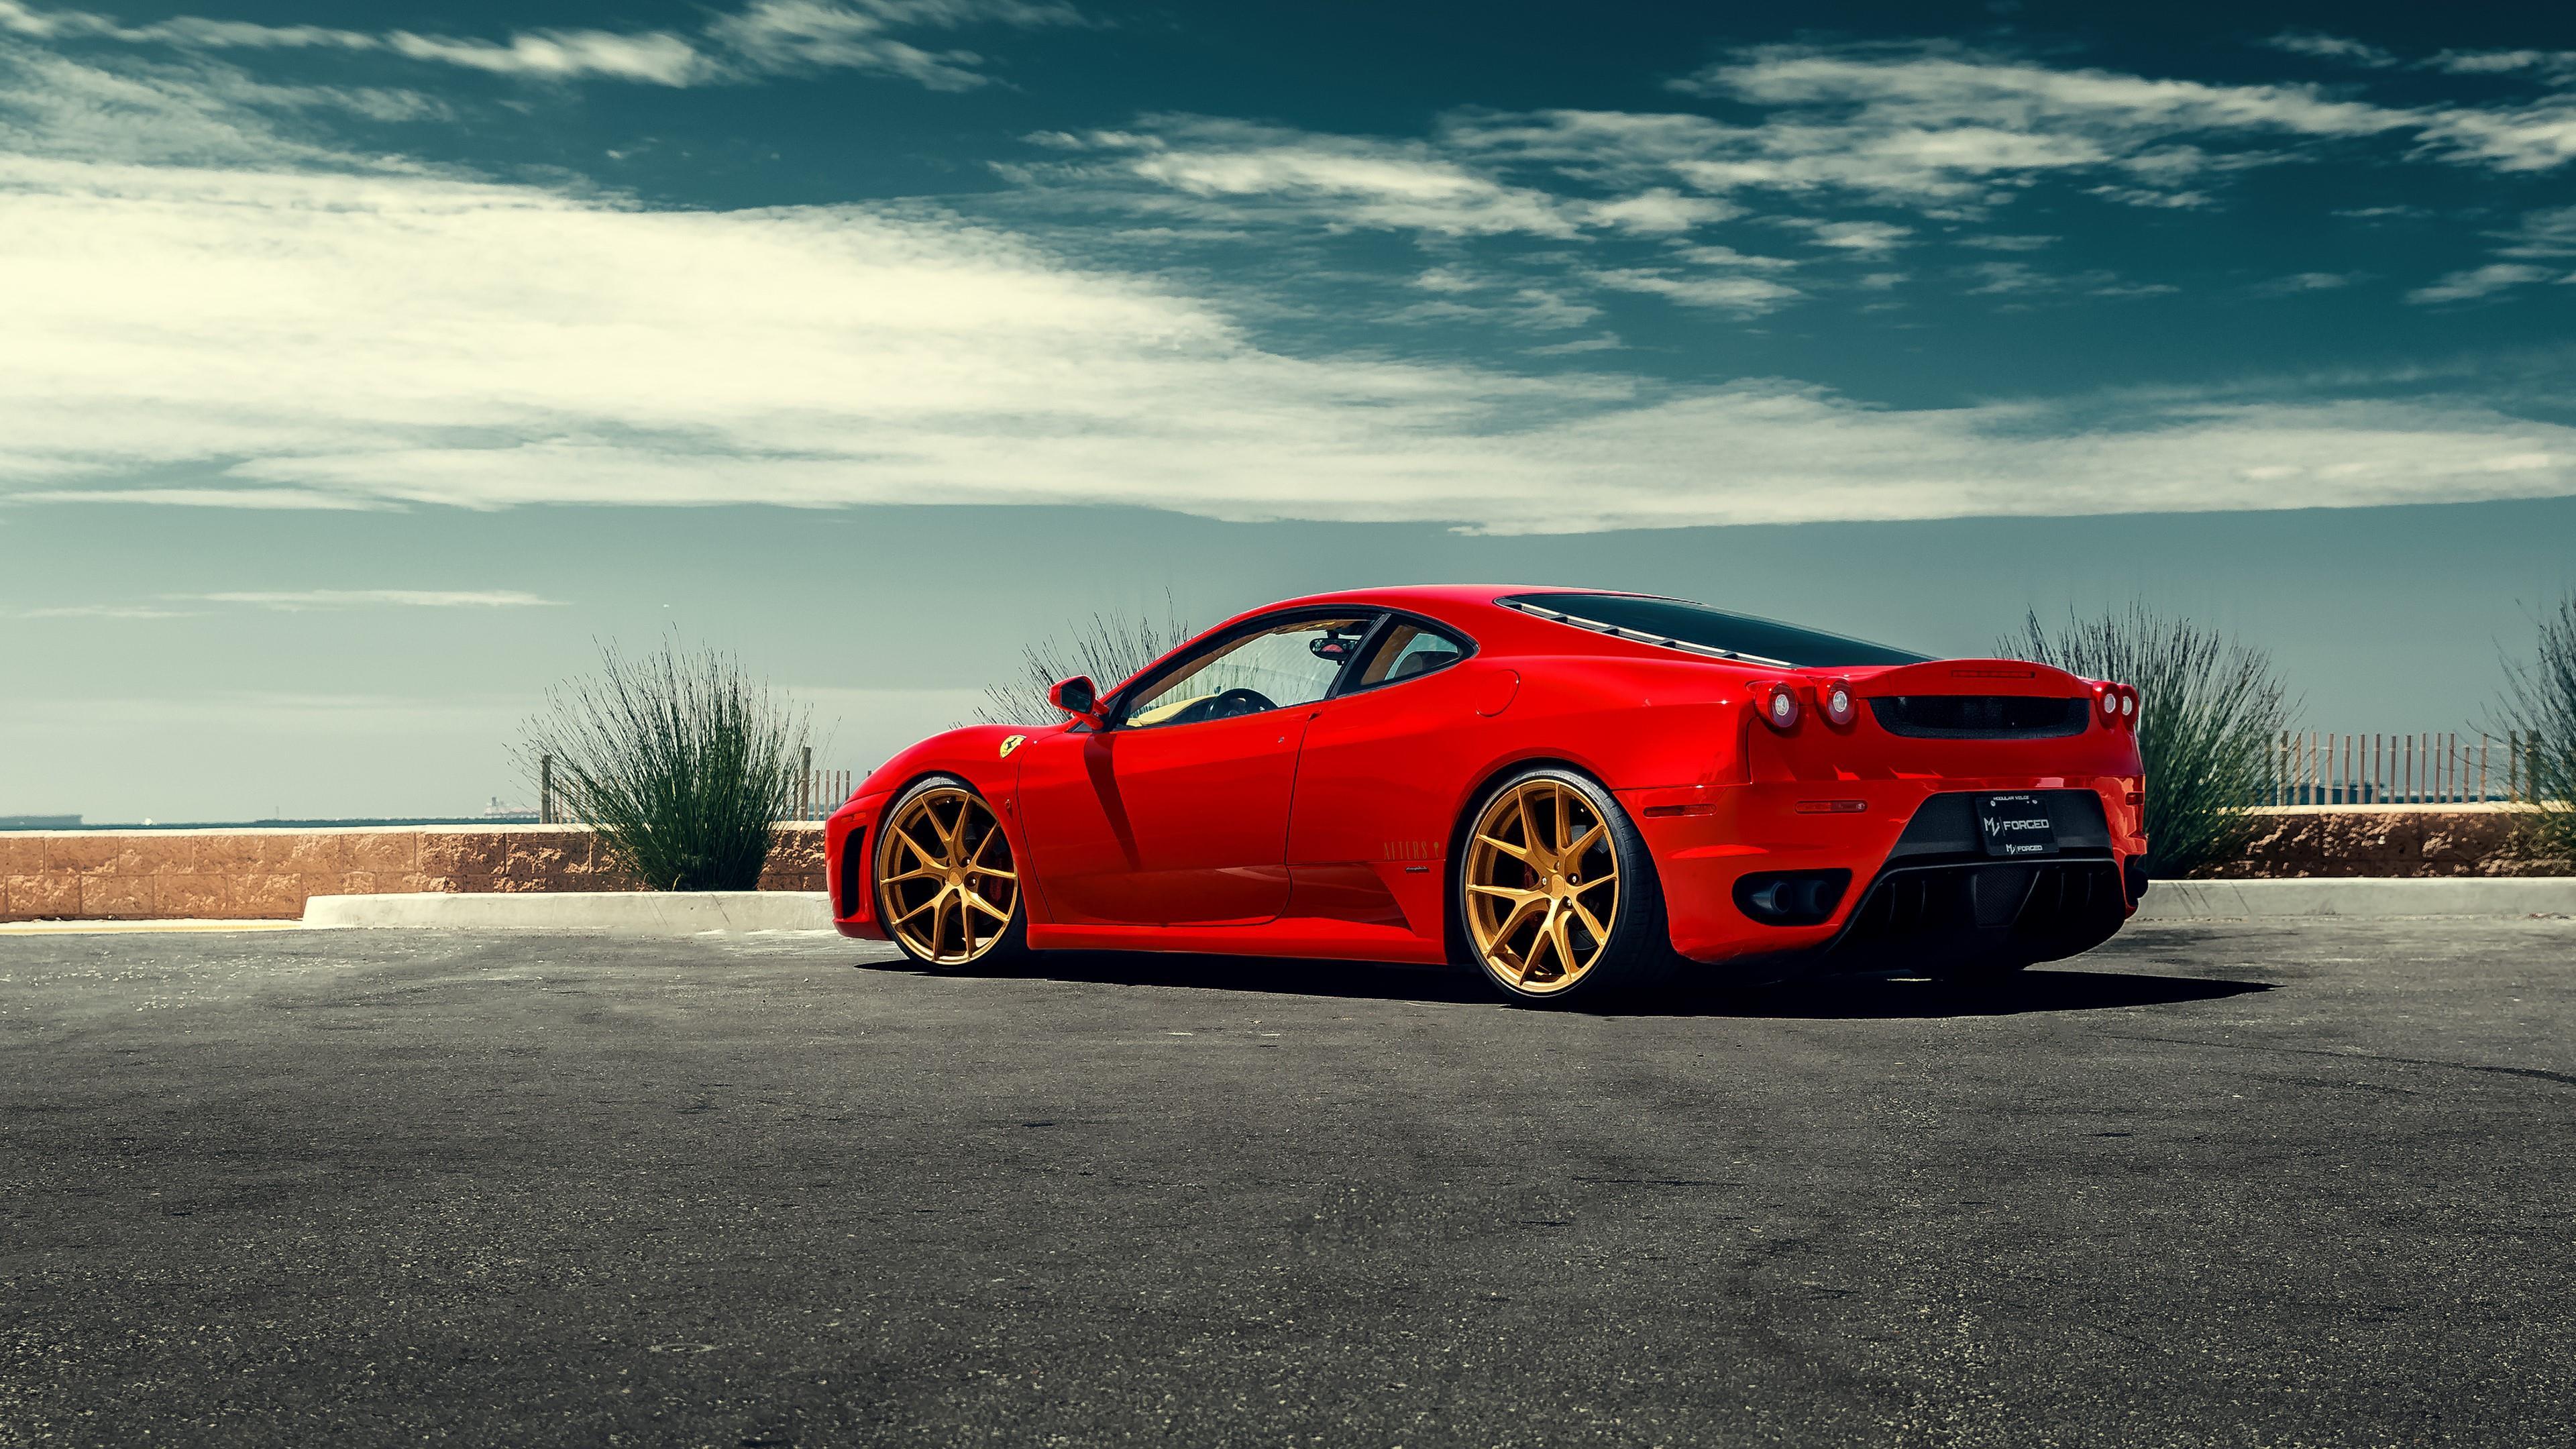 3840 x 2160 · jpeg - Ferrari F430 wallpaper - backiee